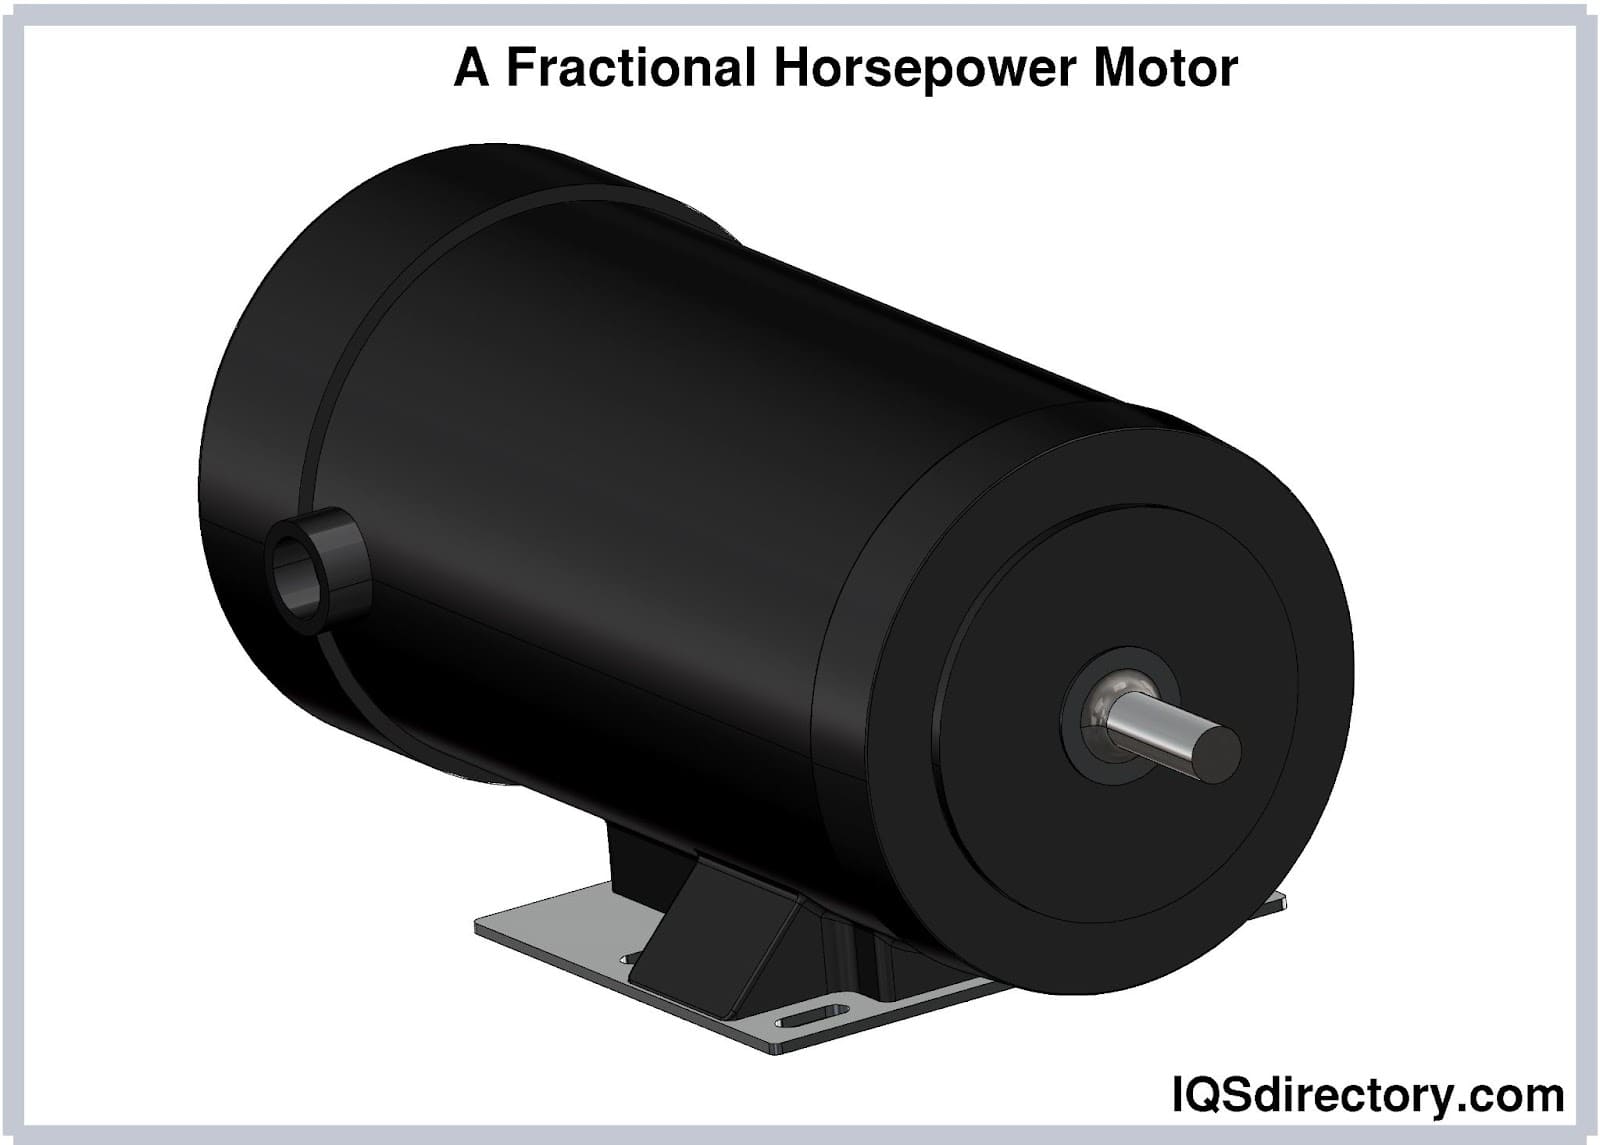 A Fractional Horsepower Motor